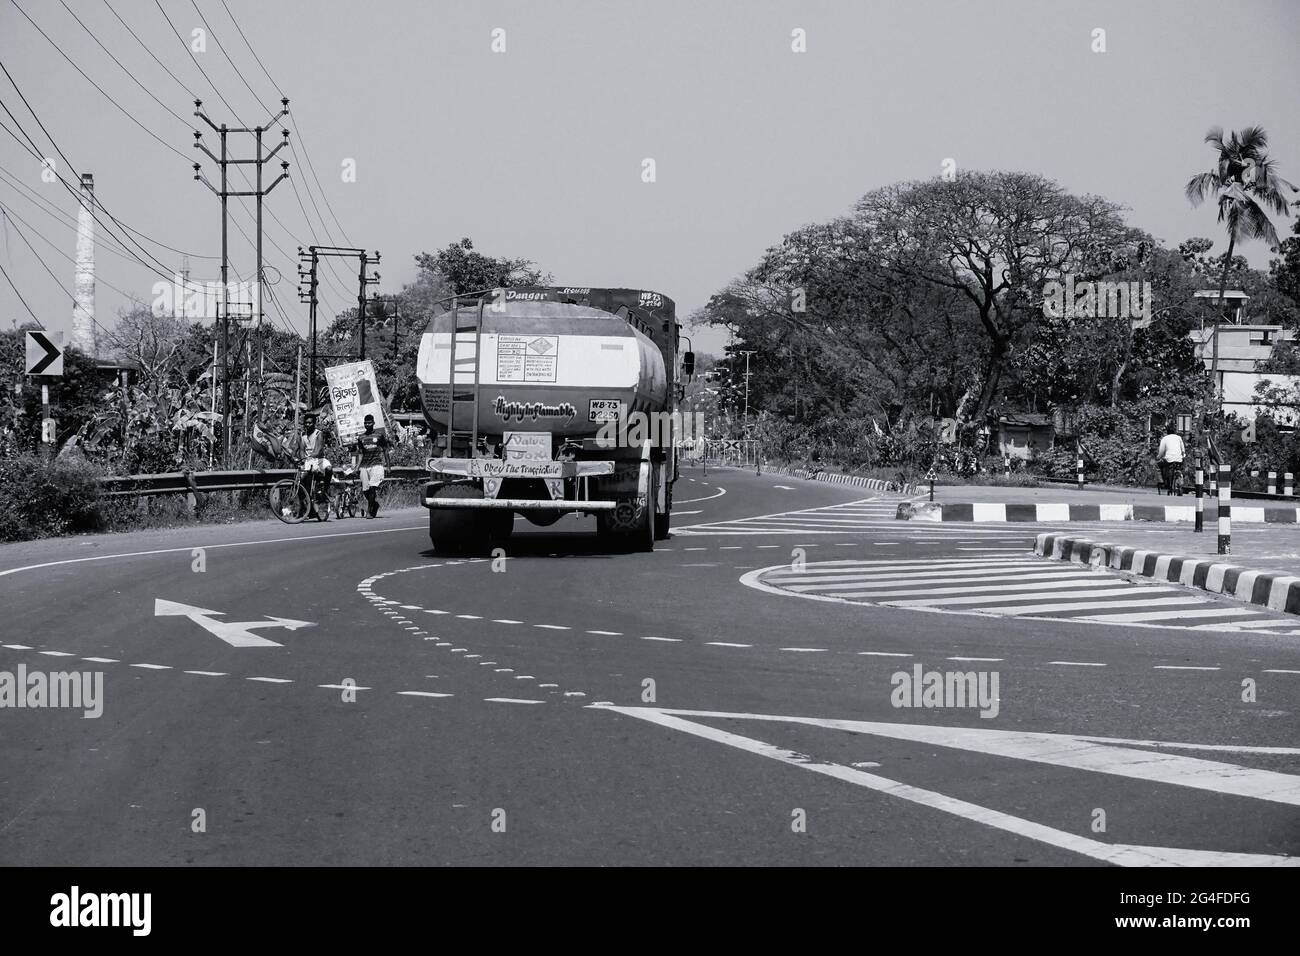 HOWRAH, BENGALA OCCIDENTALE, INDIA - 24 FEBBRAIO 2018 : UN camion di trasporto di benzina sta trasportando benzina sull'autostrada durante il giorno. Immagine in bianco e nero. Foto Stock